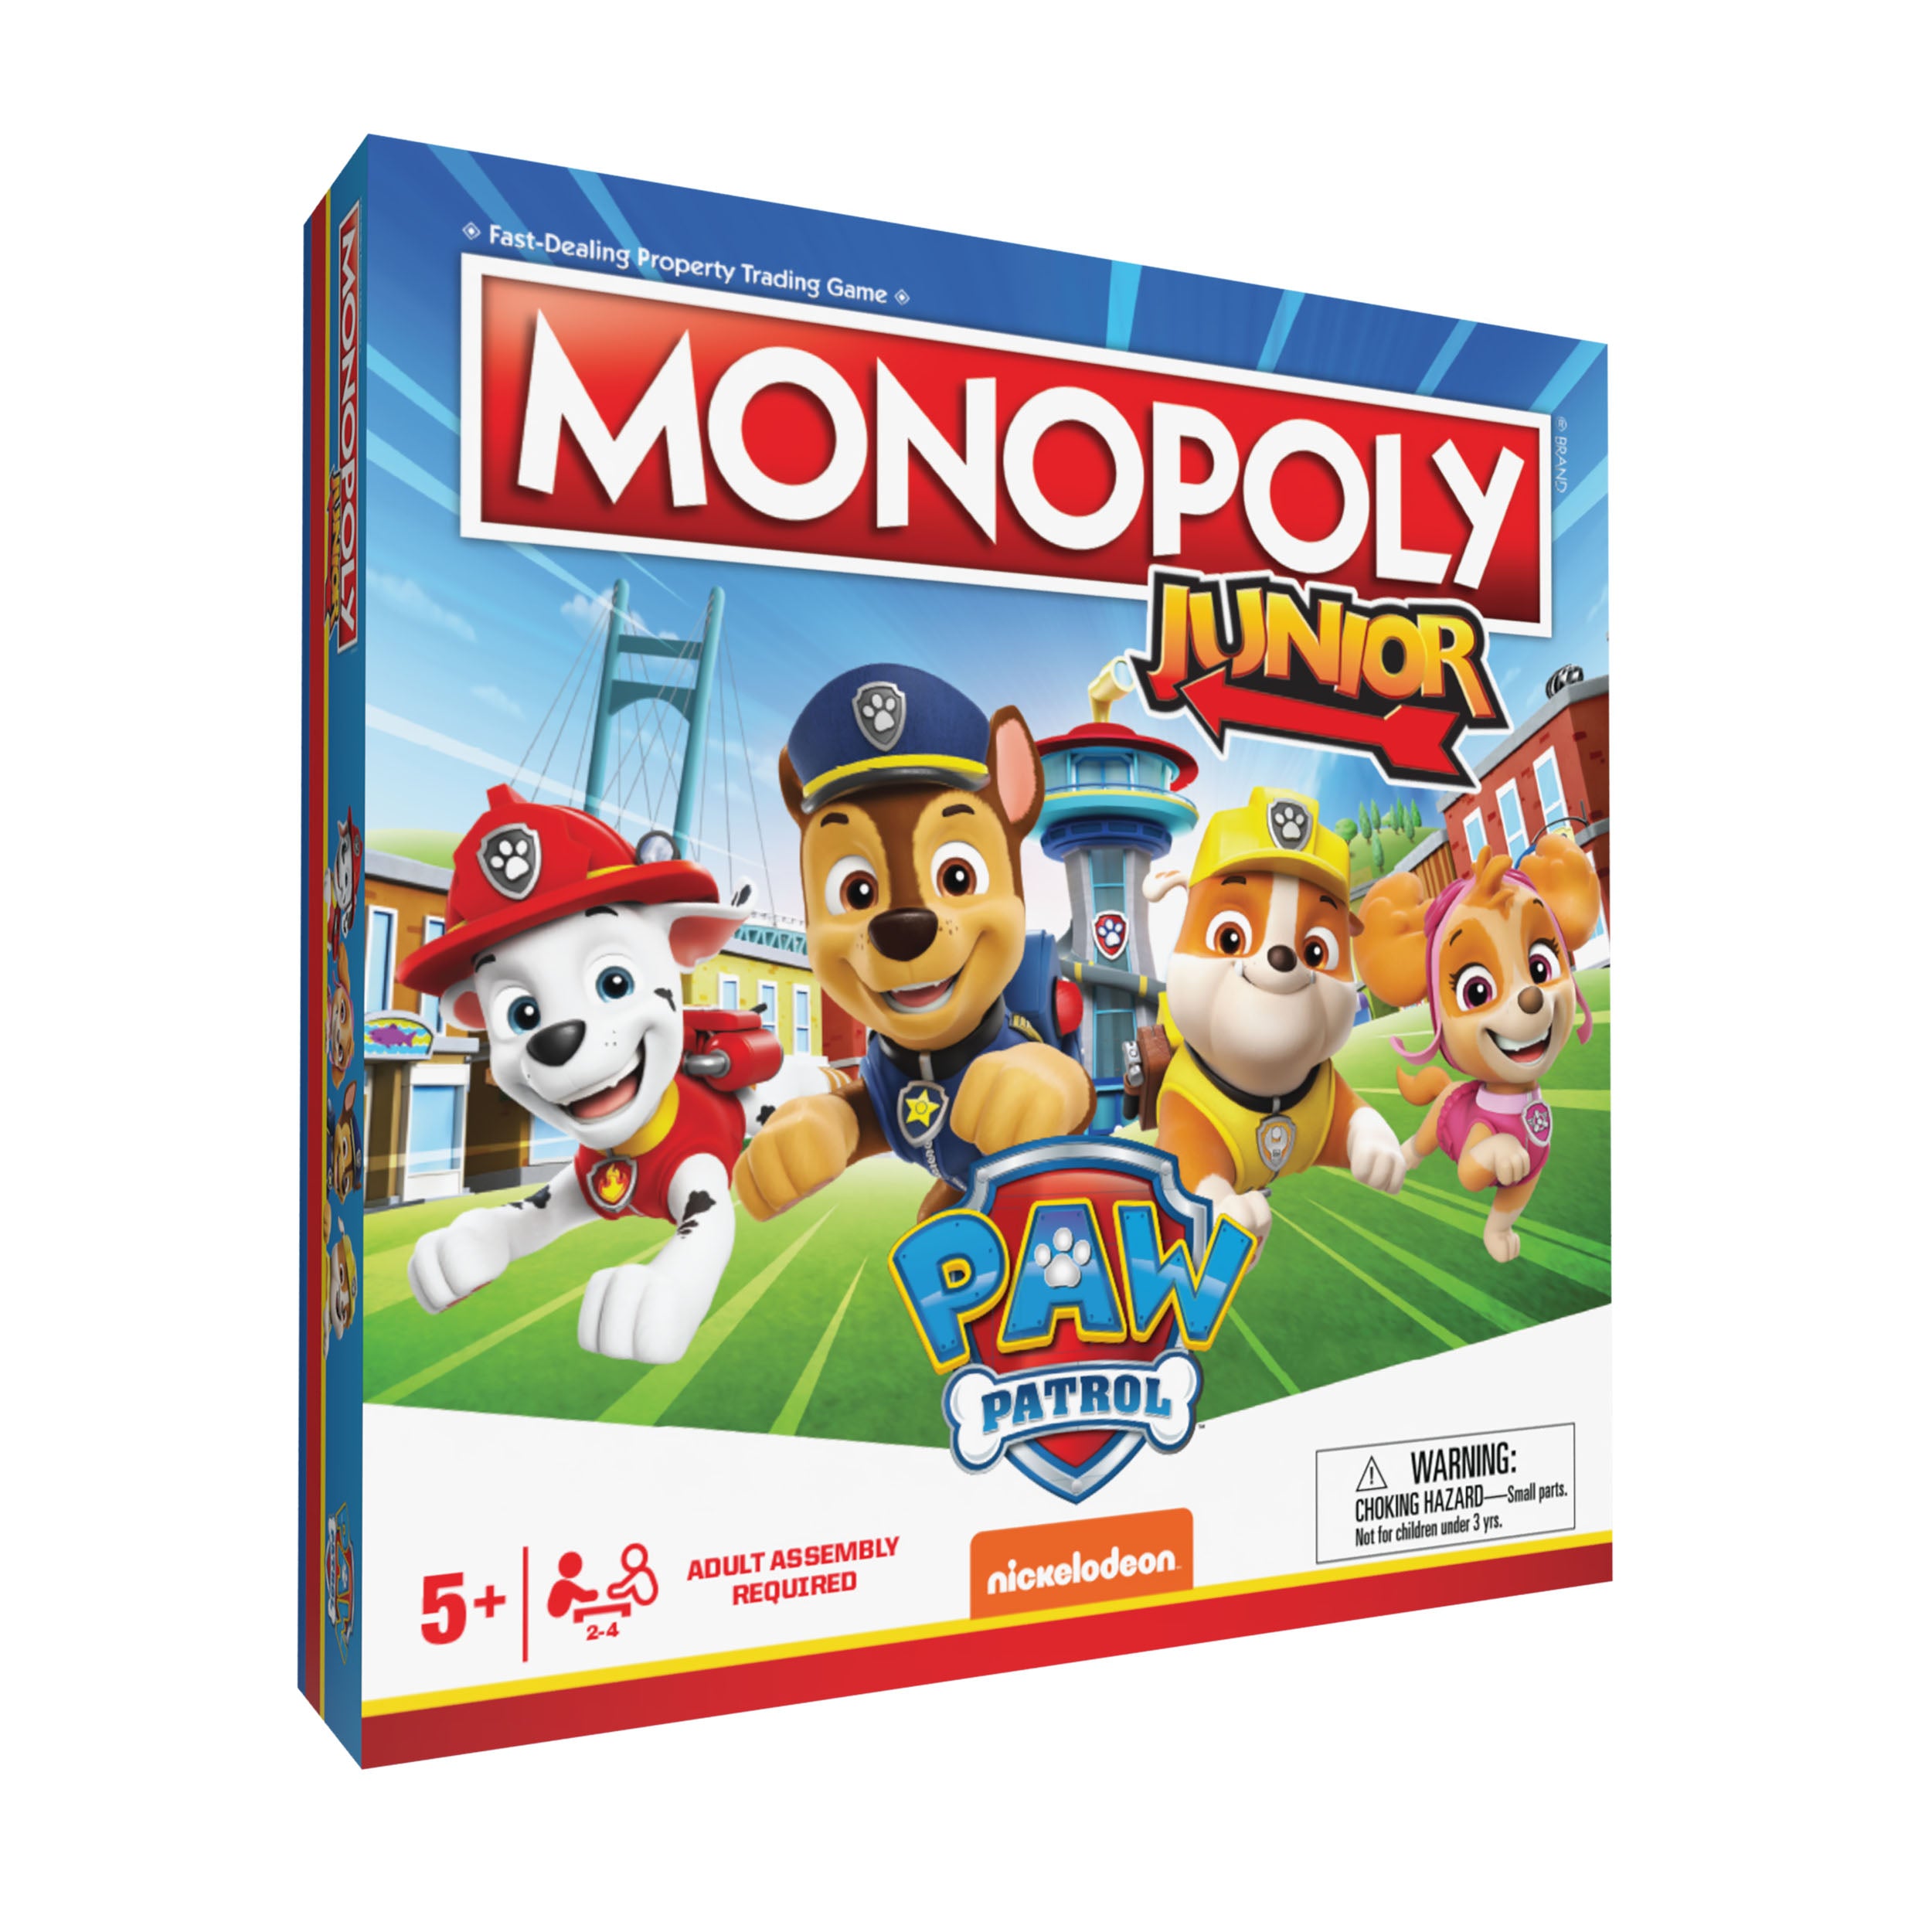 La Pat'Patrouille - Monopoly Junior